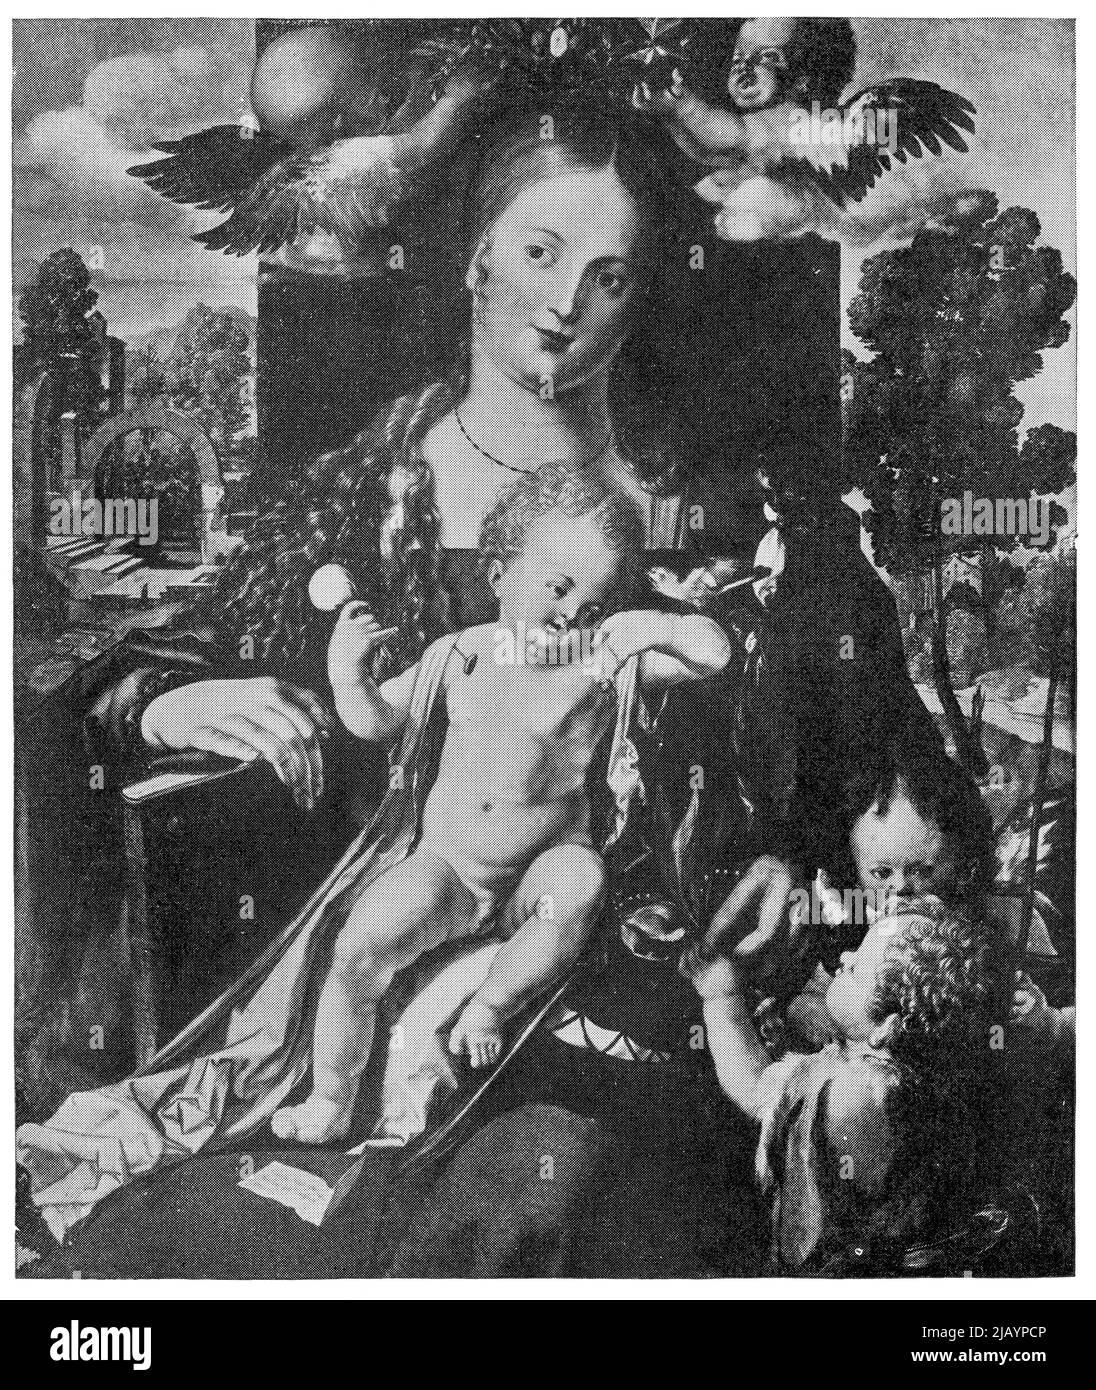 Madonna con el Siskin de un pintor alemán Albrecht Duerer. Publicación del libro 'Meyers Konversations-Lexikon', Volumen 2, Leipzig, Alemania, 1910 Foto de stock